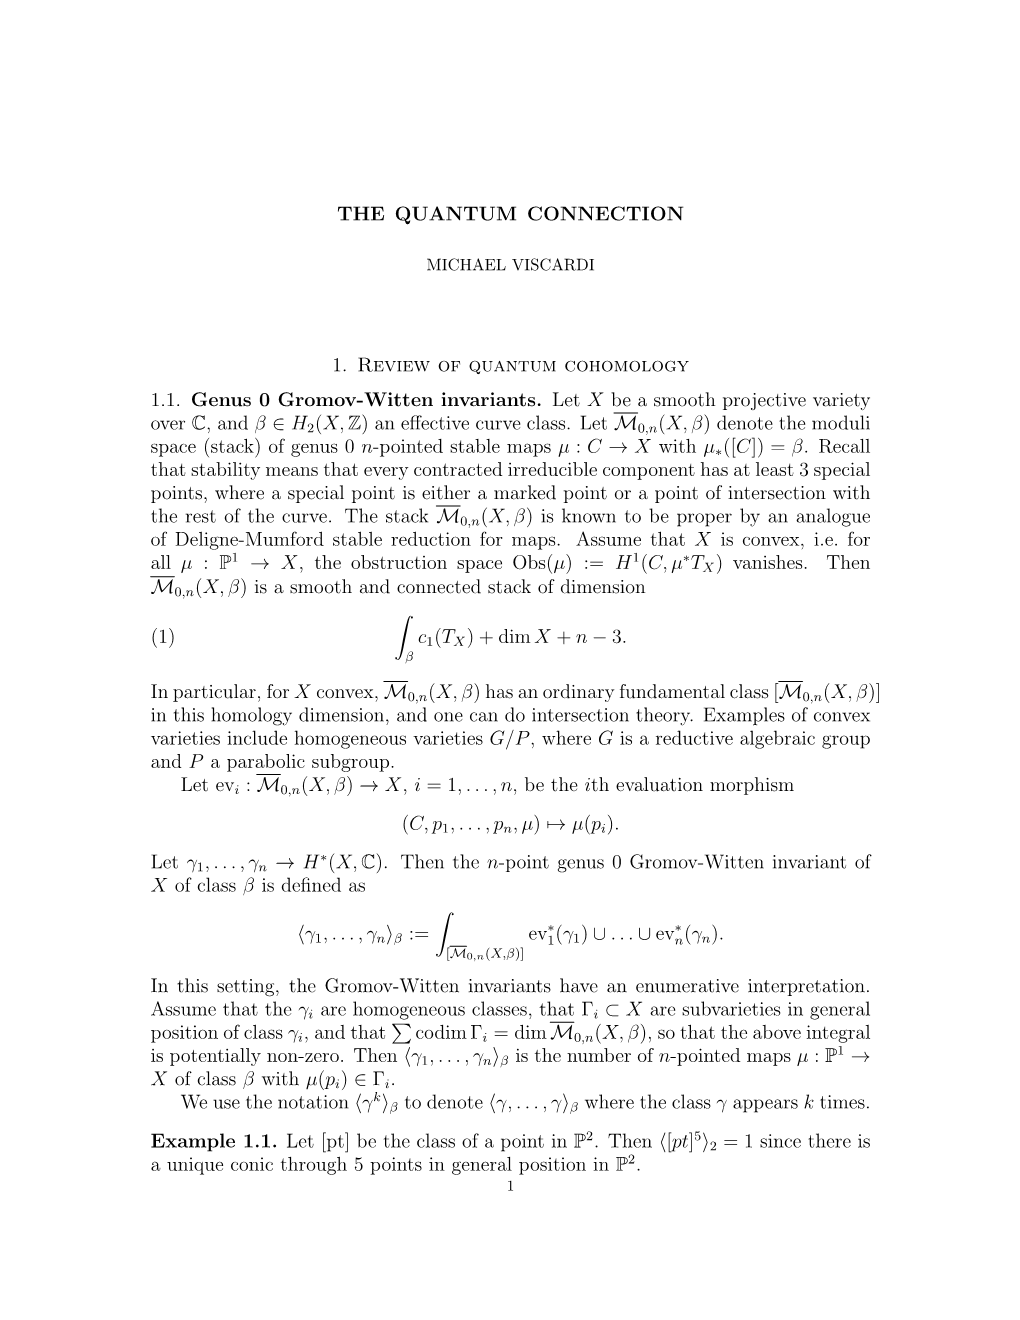 1. Review of Quantum Cohomology 1.1